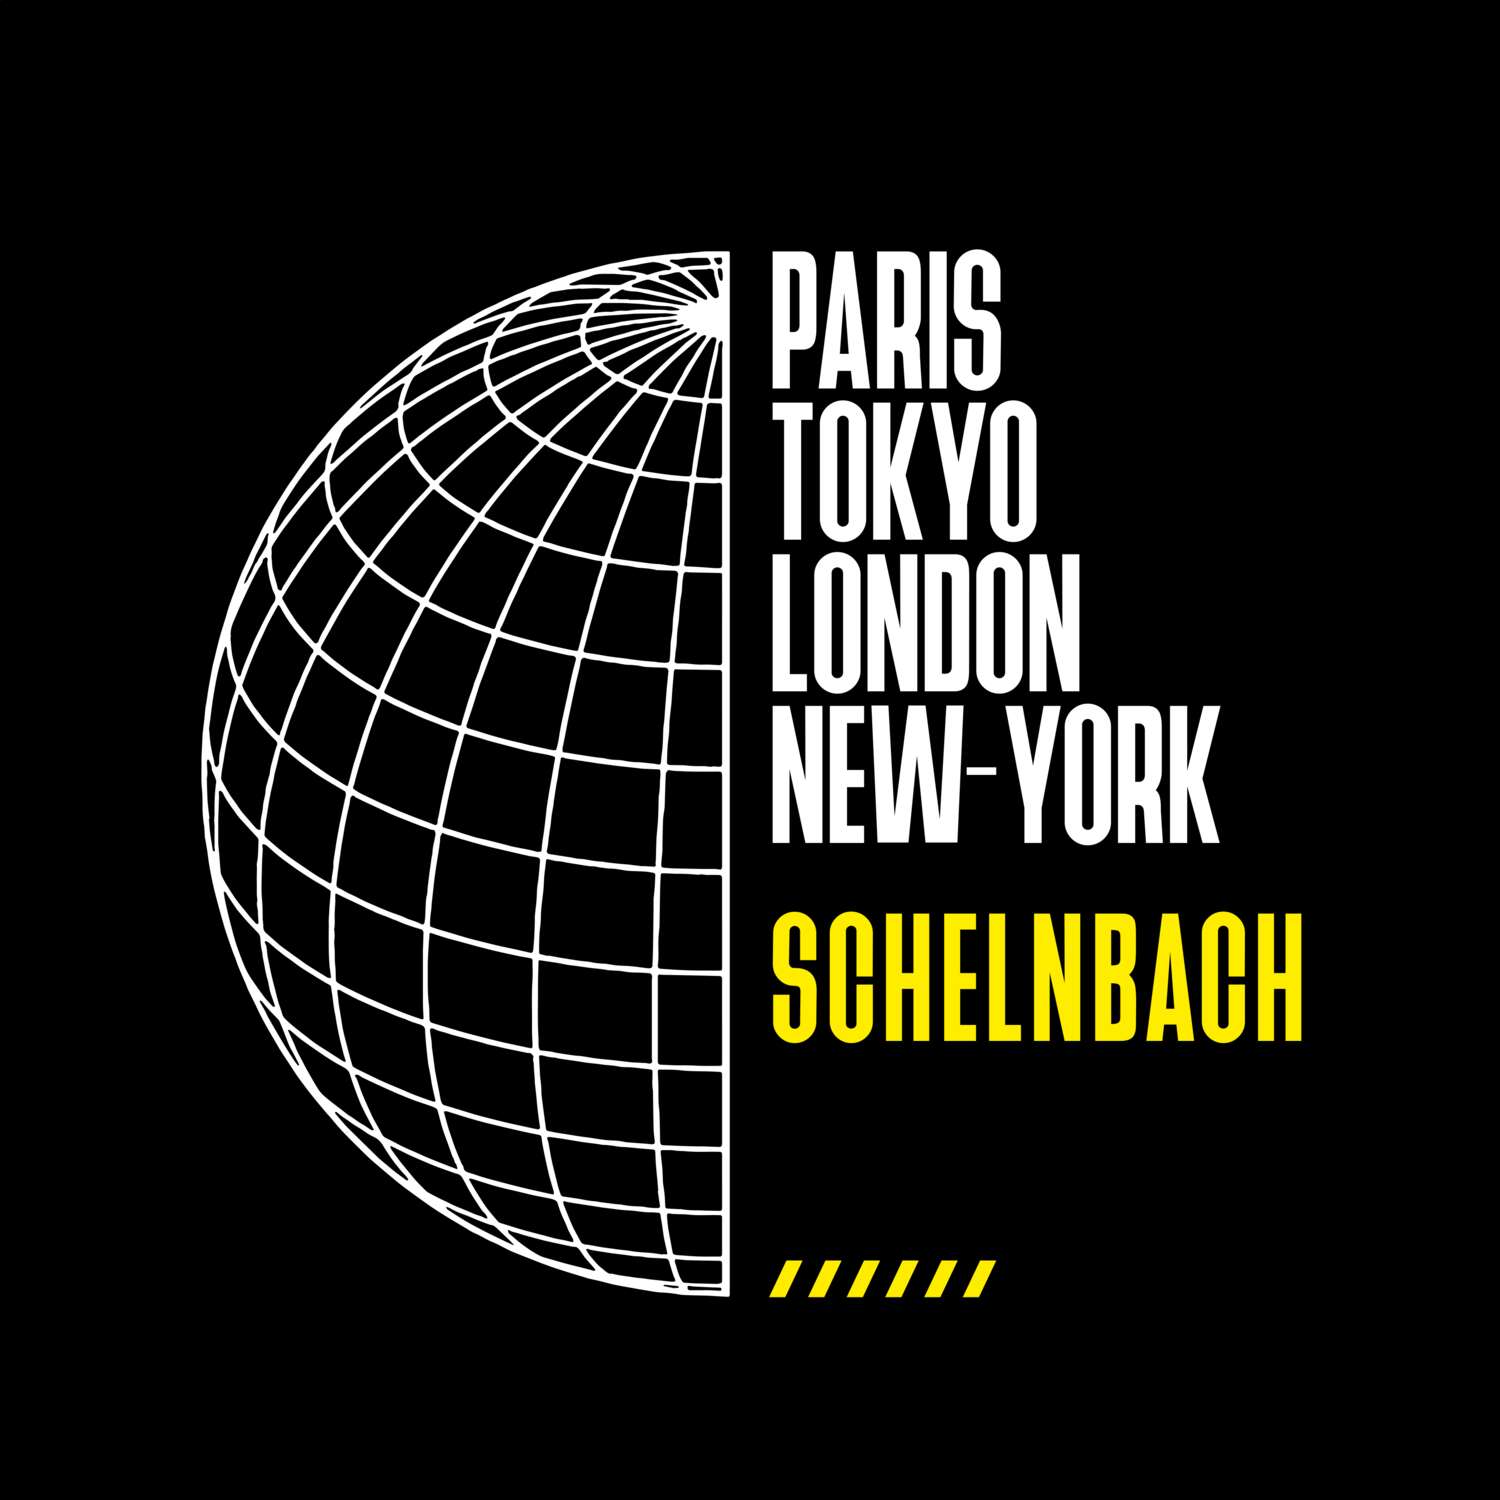 Schelnbach T-Shirt »Paris Tokyo London«